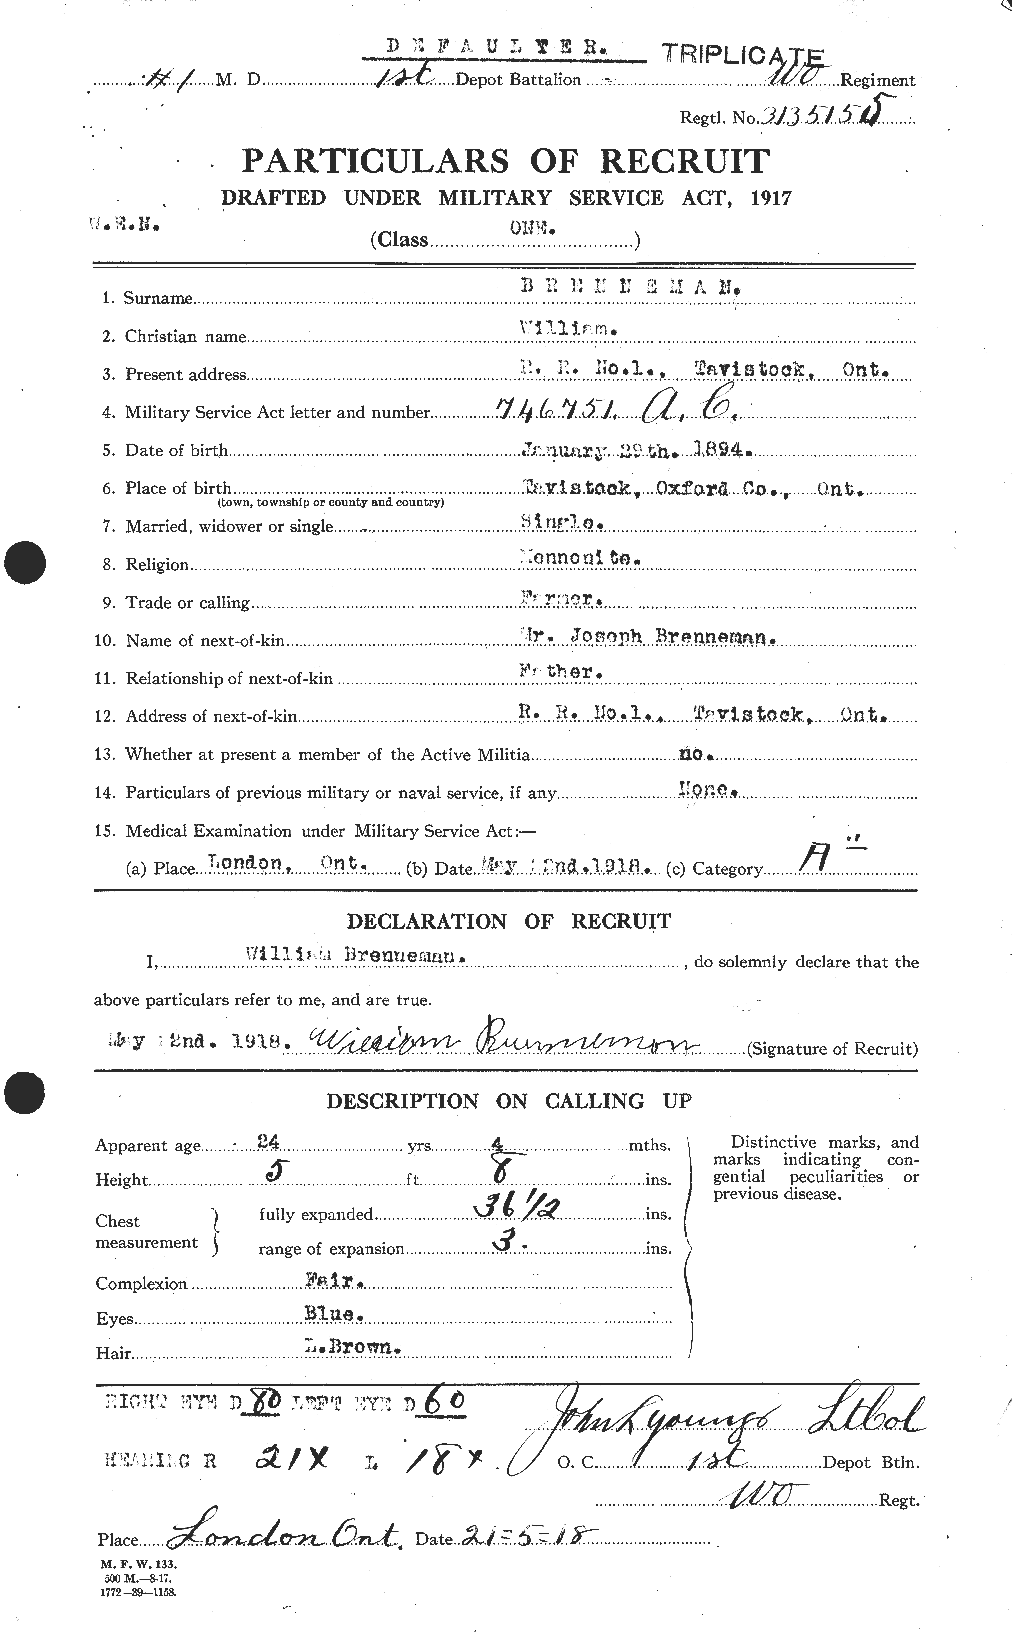 Dossiers du Personnel de la Première Guerre mondiale - CEC 260217a